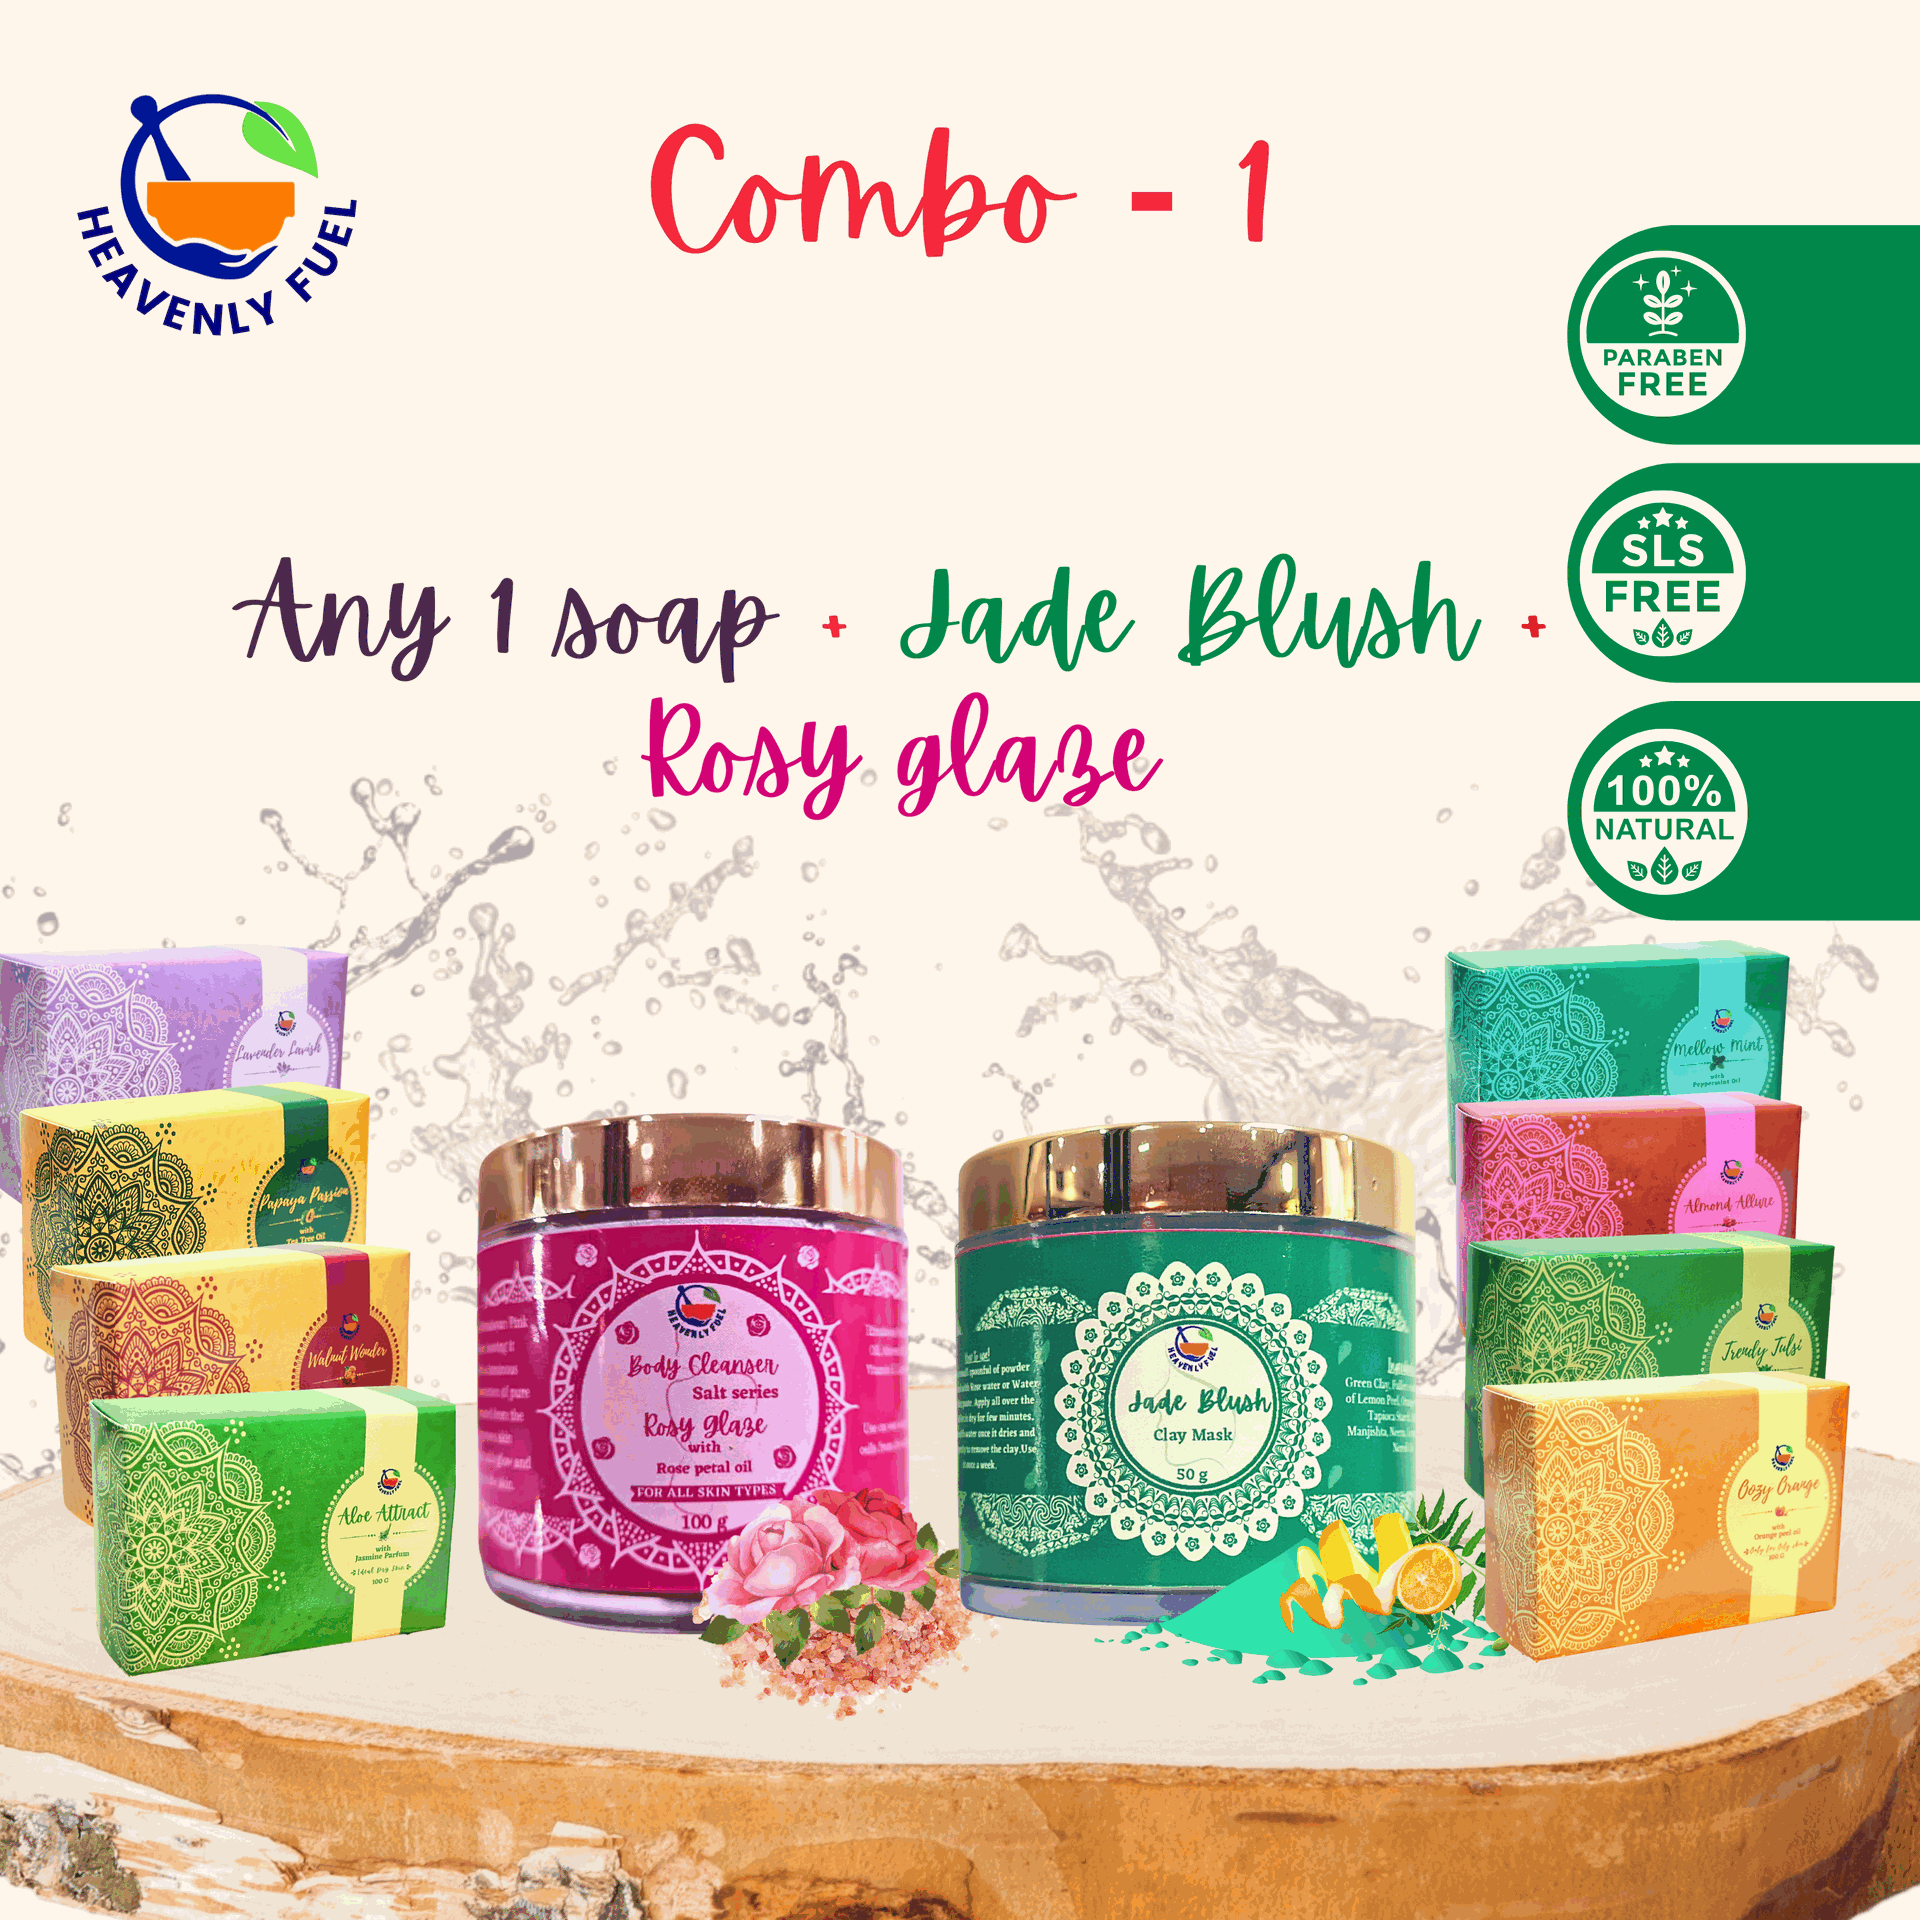 Jade Blush 50g|Any 1 Handmade Butter soap 100g |Rosy Glaze 100g|Combo - 1| - hfnl!fe